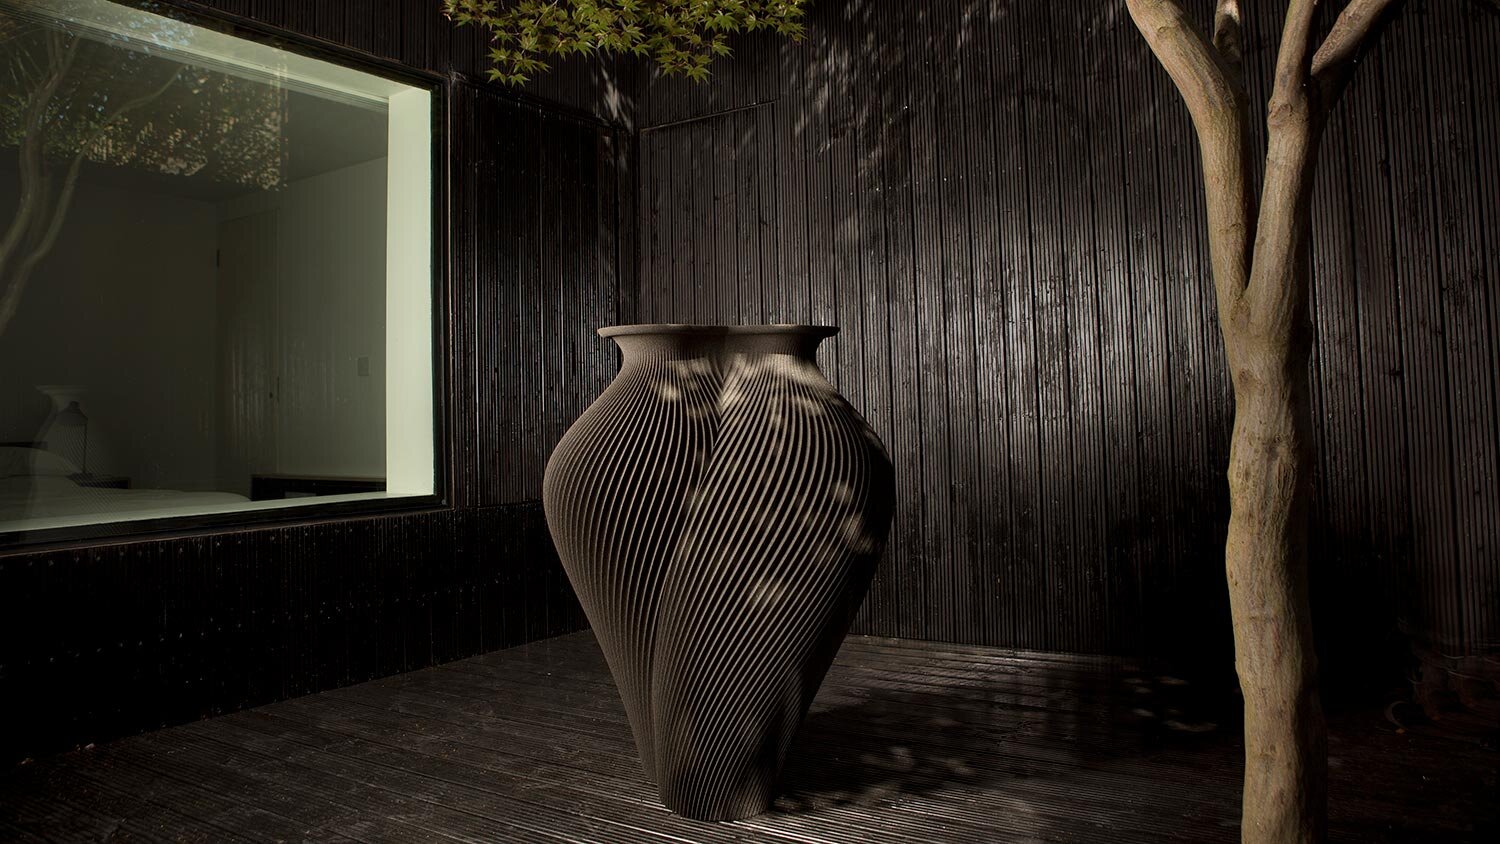 3D printed large vase